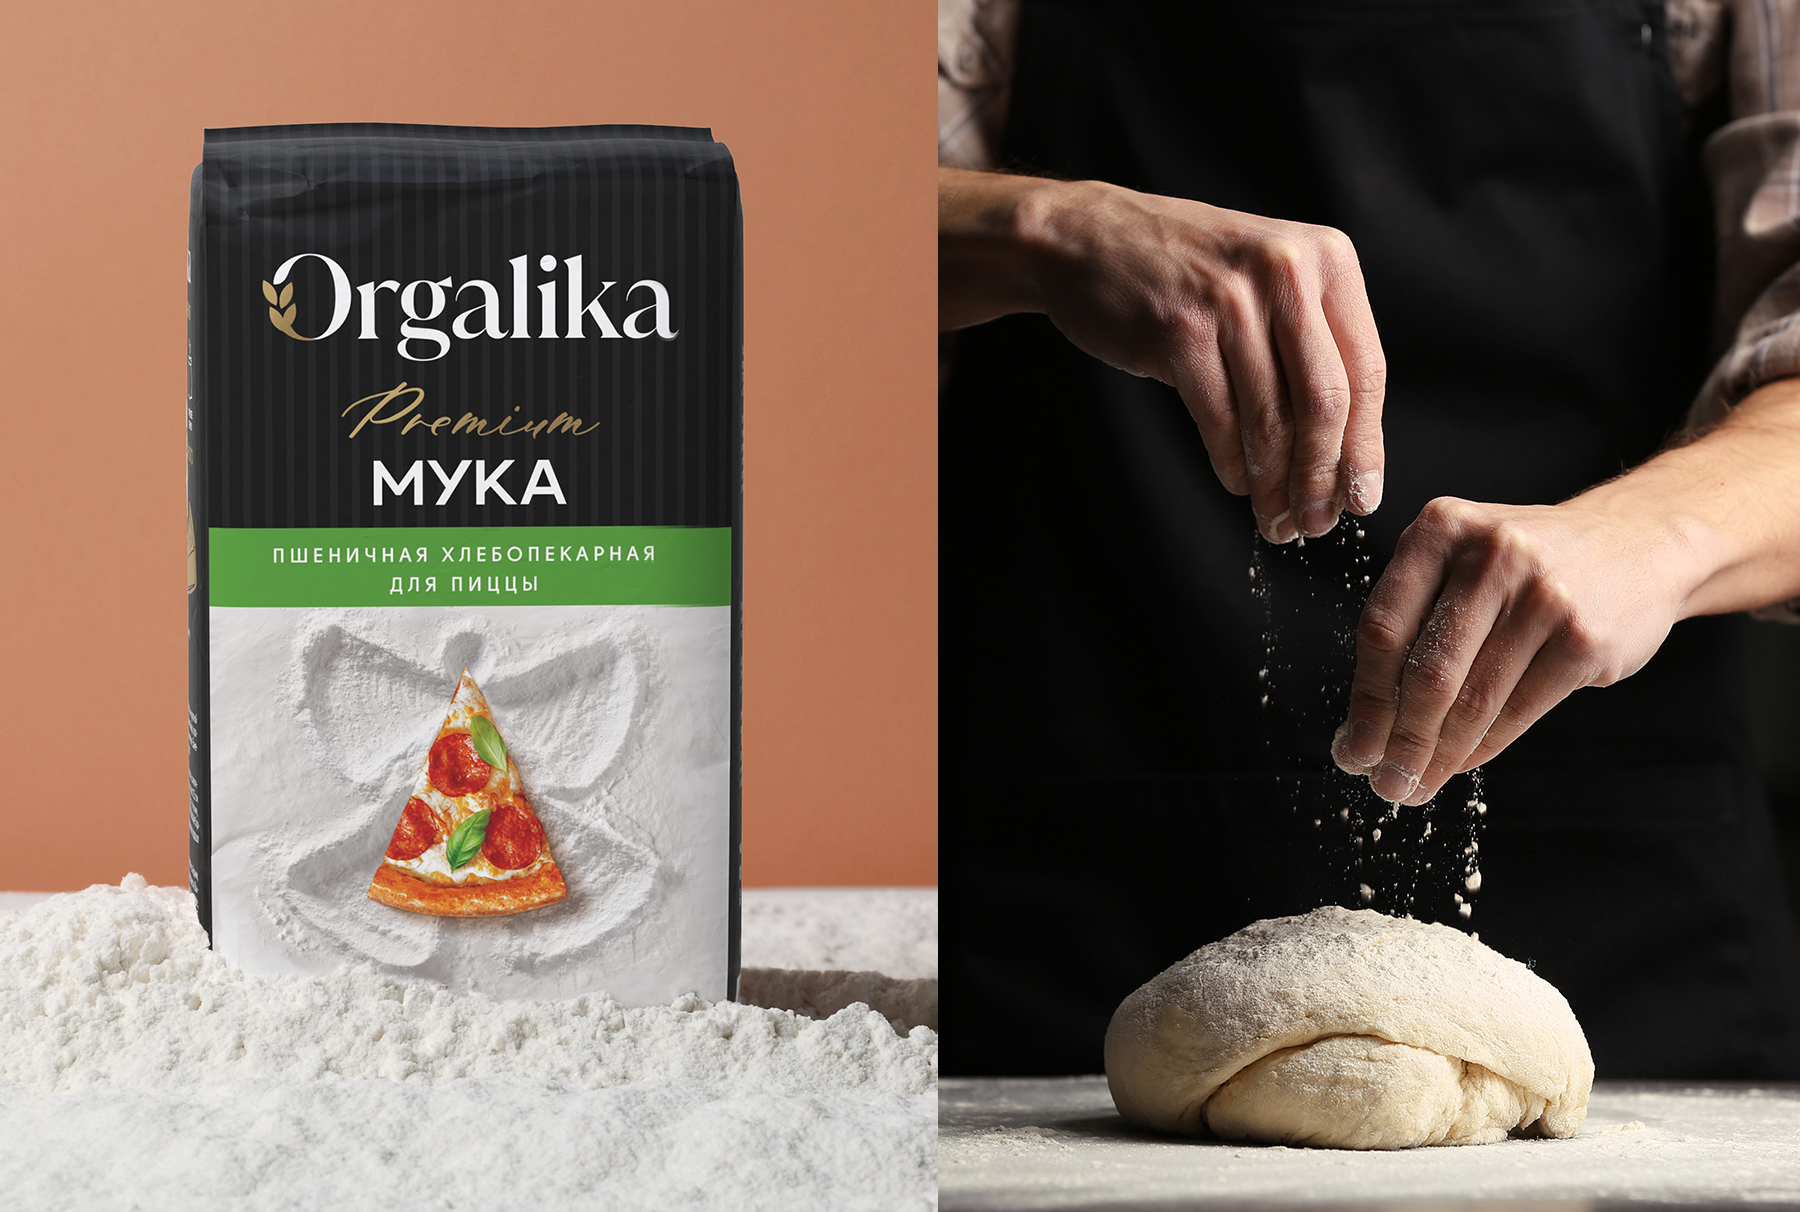 Дизайн упаковки муки для пиццы Orgalika Premium